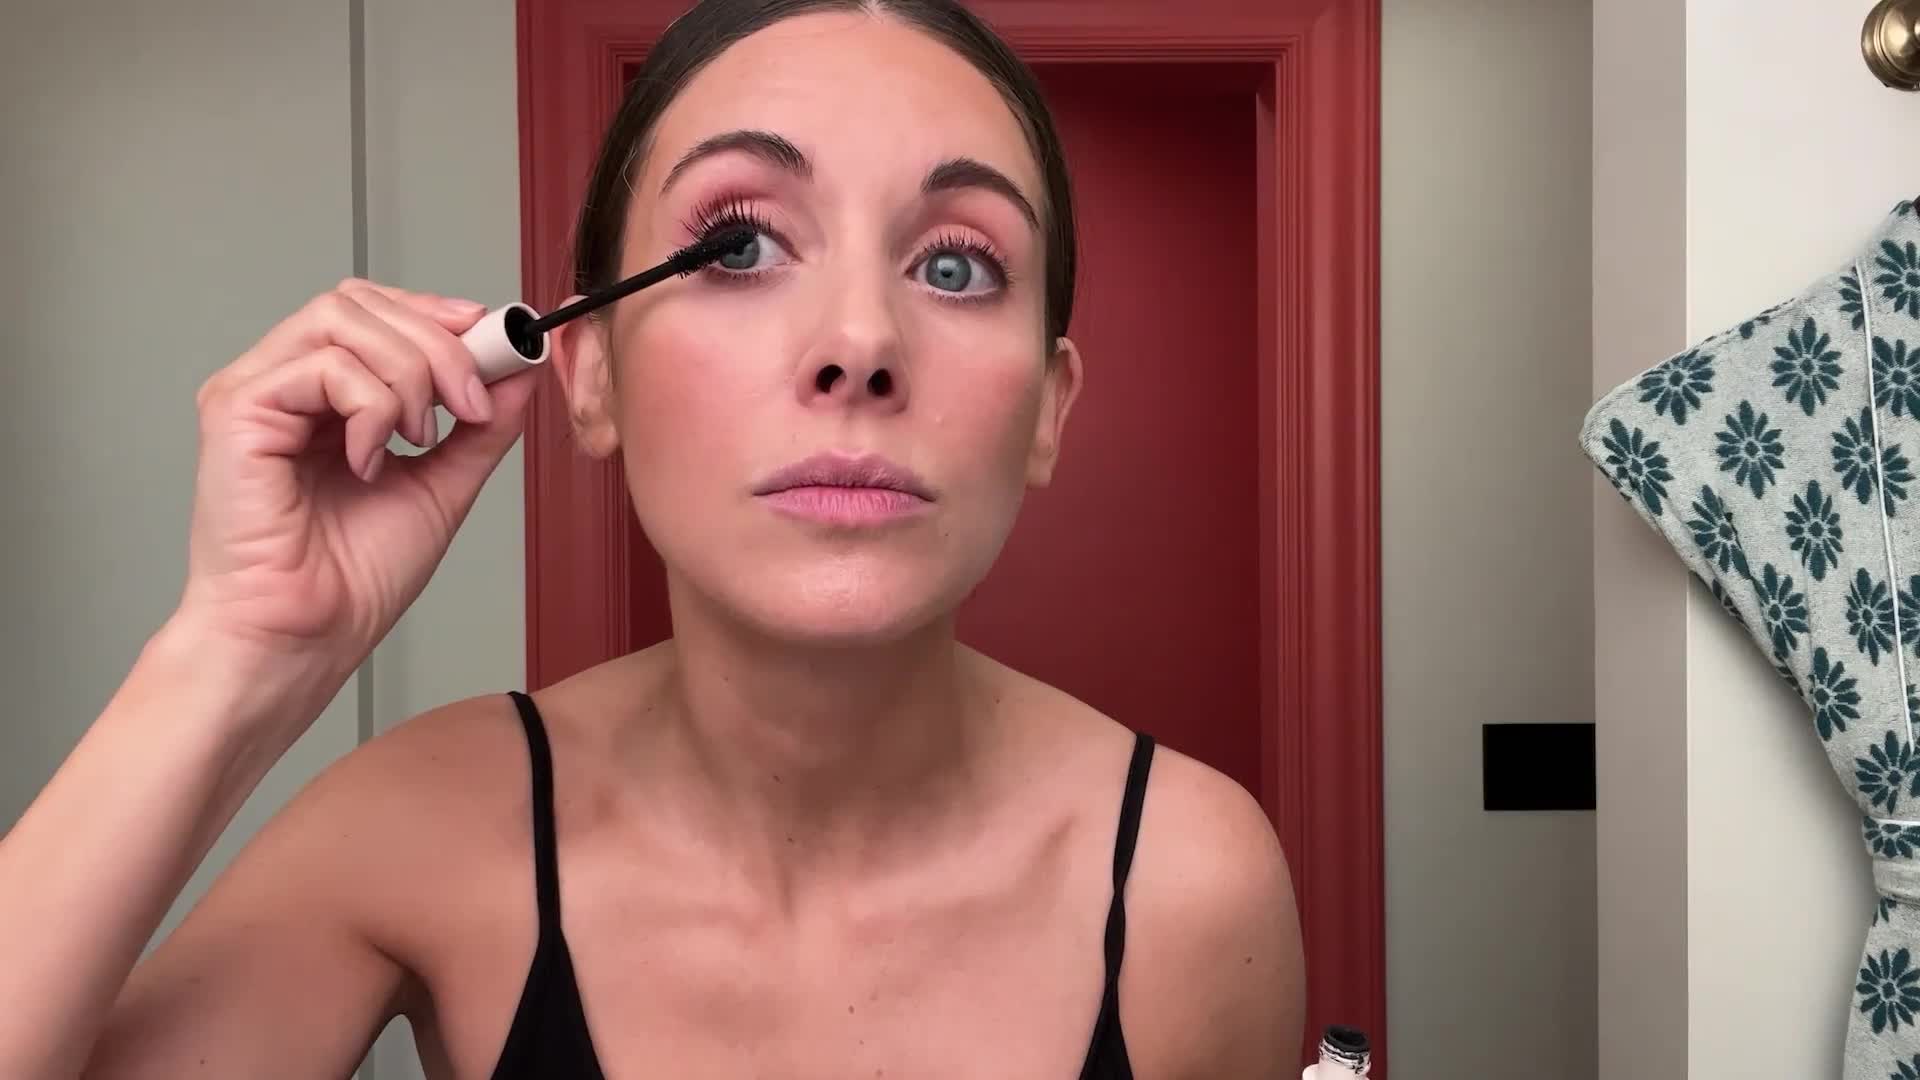 8 Simple Red-Carpet Beauty Secrets From An A-List Makeup Artist